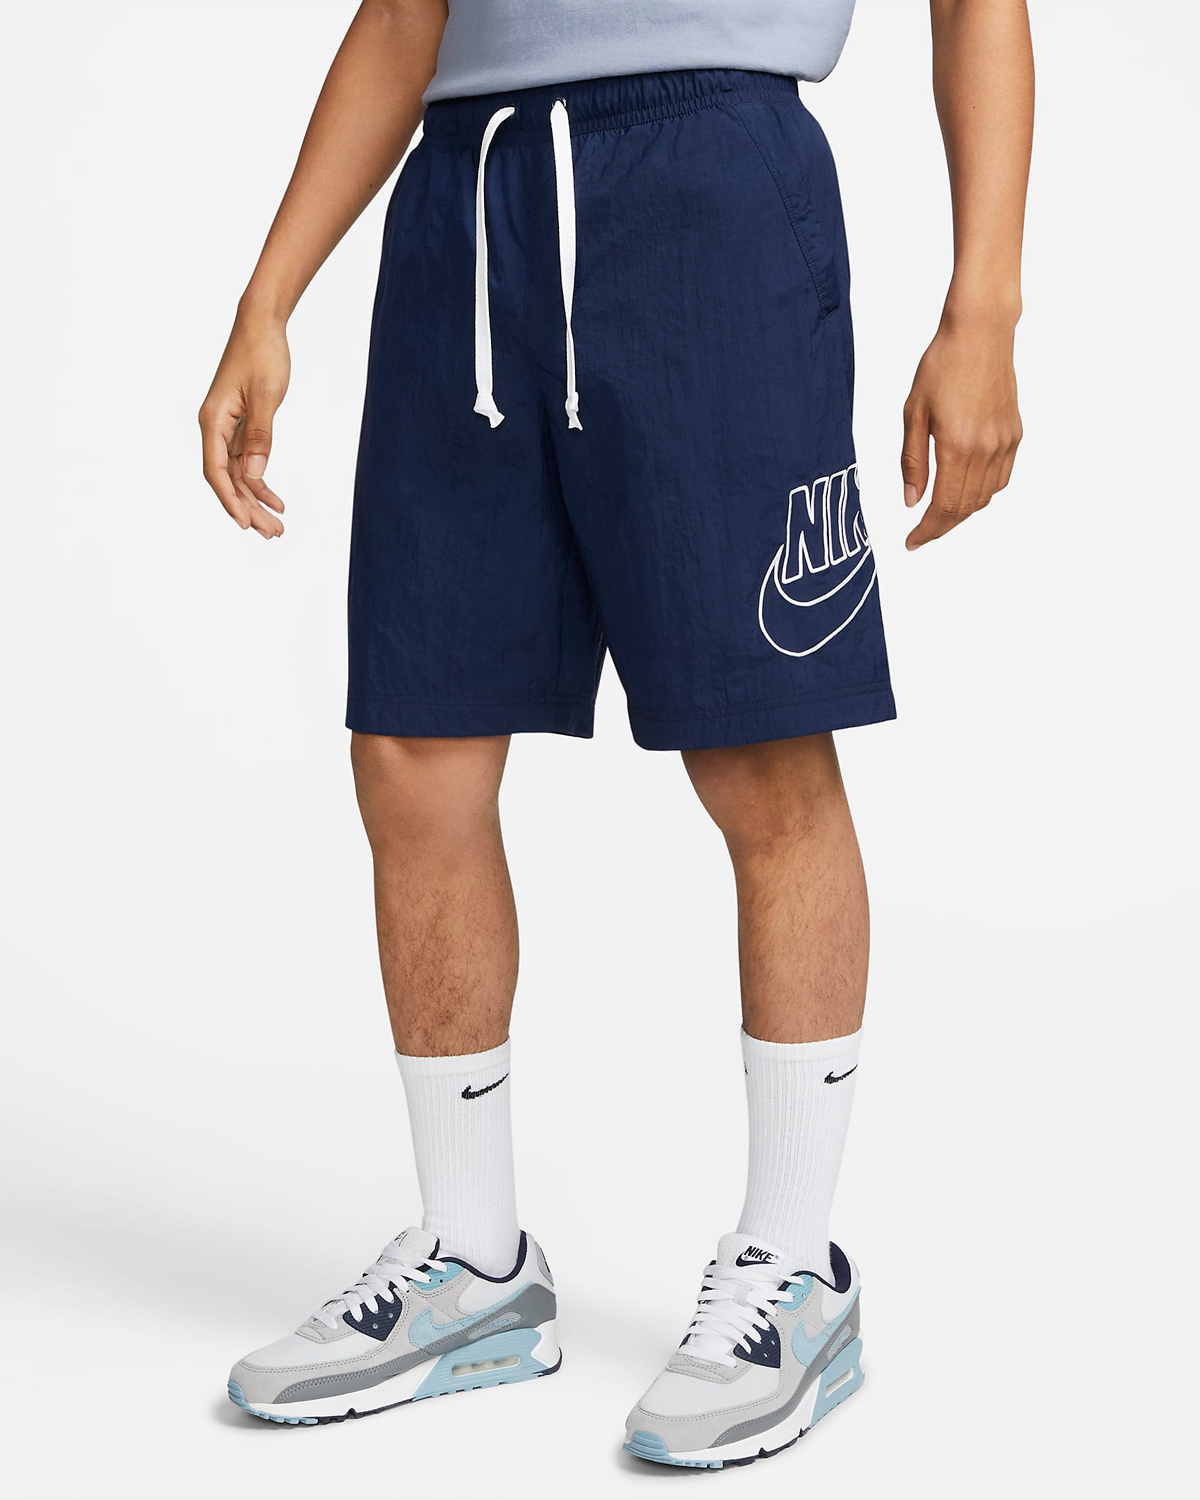 Nike-Alumni-Woven-Flow-Shorts-Midnight-Navy